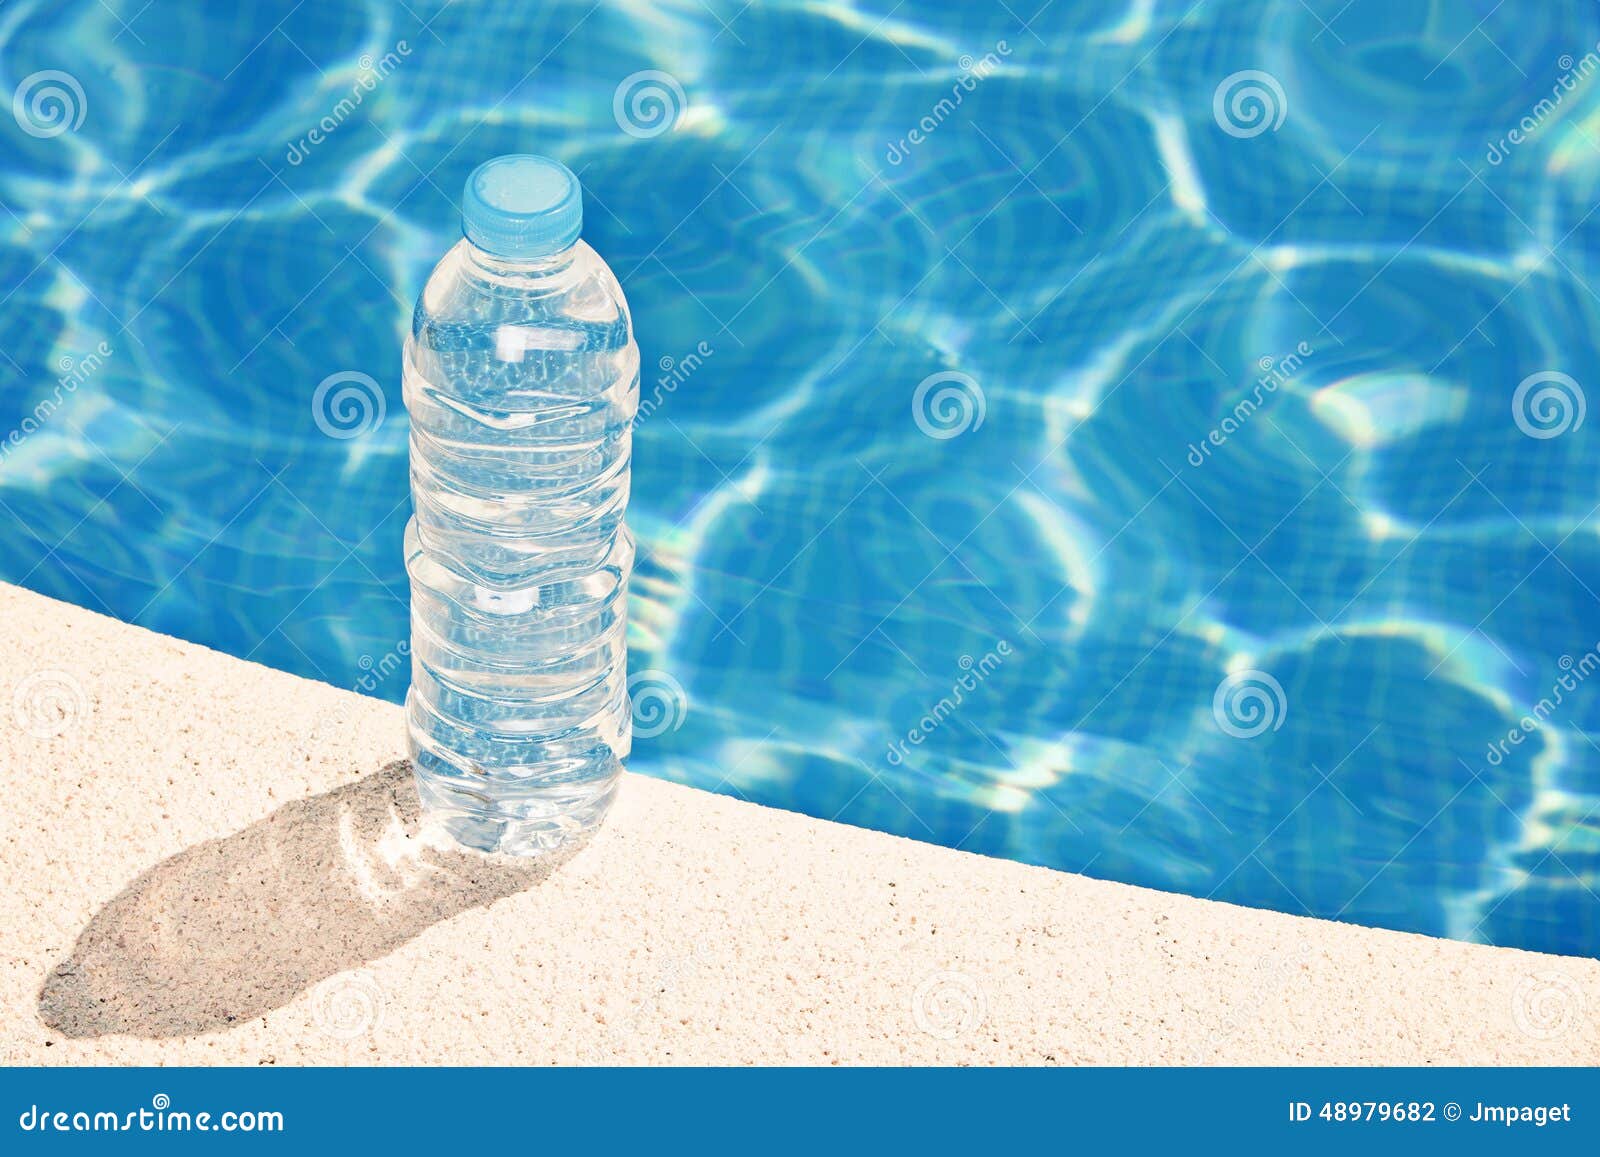 Бутылка наполненная водой тонет в воде. Бутылка для воды. Бутылка воды на столе. Бутылка воды в бассейне. Вода в бутылочках на столе.